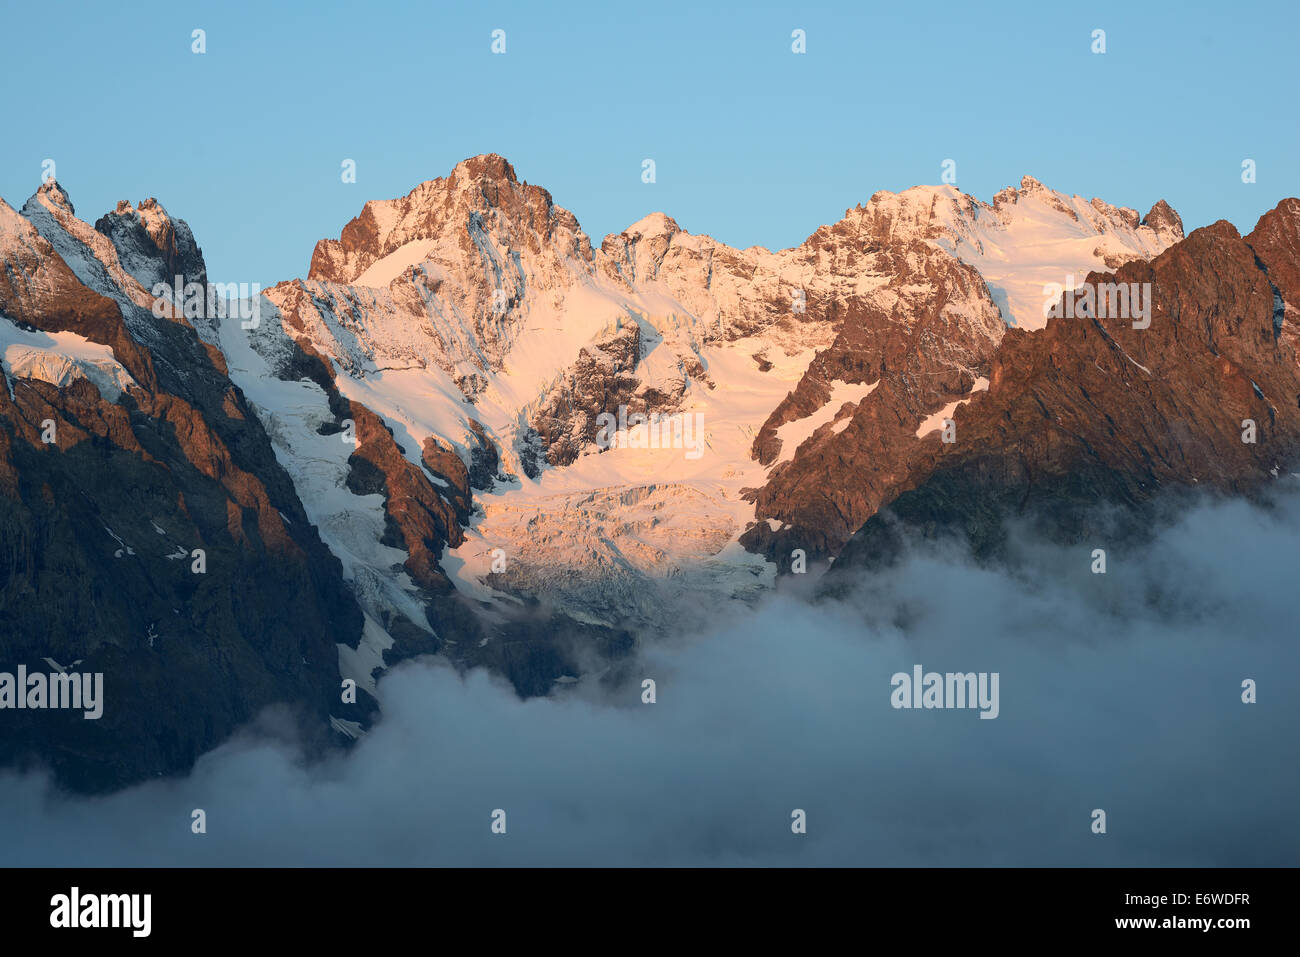 Pic Gaspard de 3883 metros de altura a la izquierda y La Meije de 3984 metros de altura a la derecha. Parque Nacional Ecrins, Altos Alpes, Francia. Foto de stock